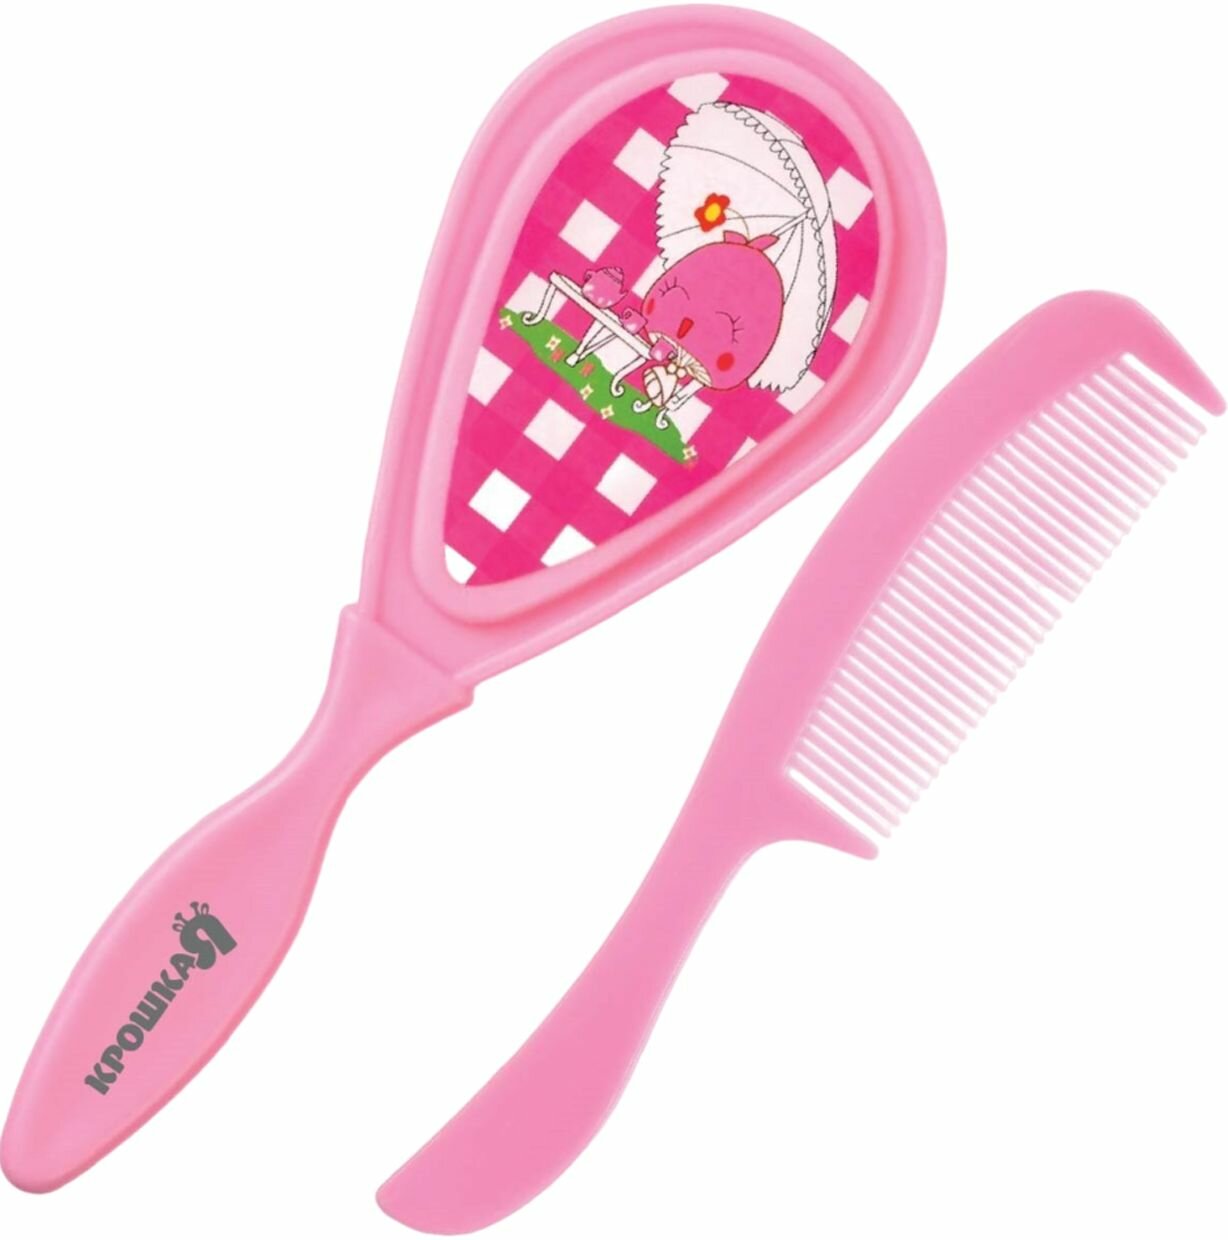 Набор детских расчесок из 2 штук для волос, детская массажная щётка и расческа-гребешок для новорожденных и малышей, цвет розовый, рисунок микс